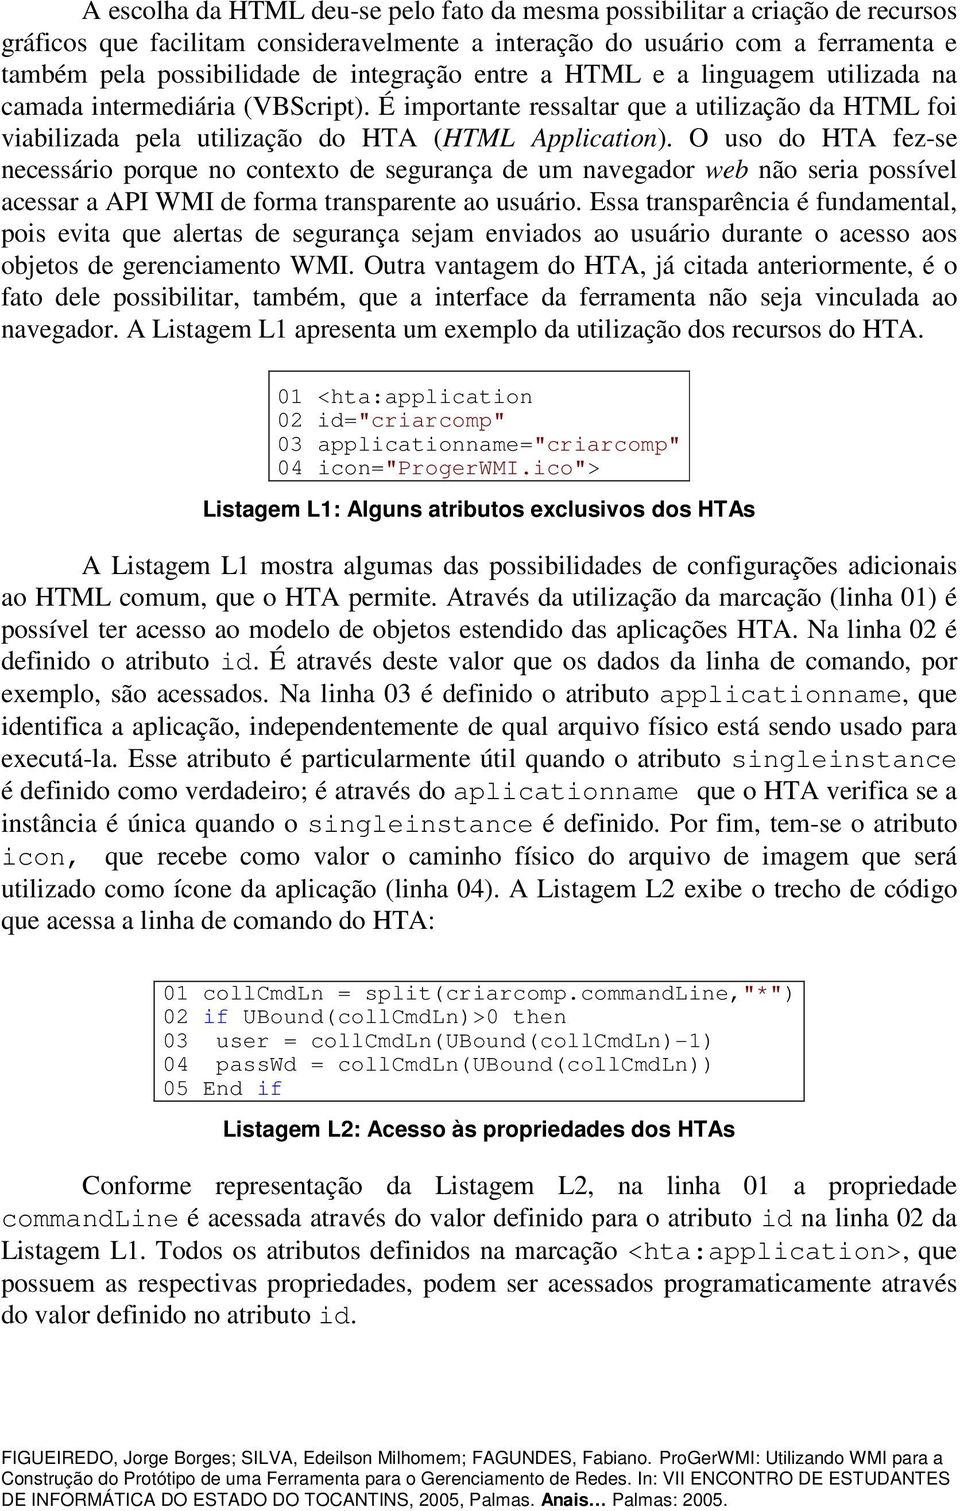 O uso do HTA fez-se necessário porque no contexto de segurança de um navegador web não seria possível acessar a API WMI de forma transparente ao usuário.